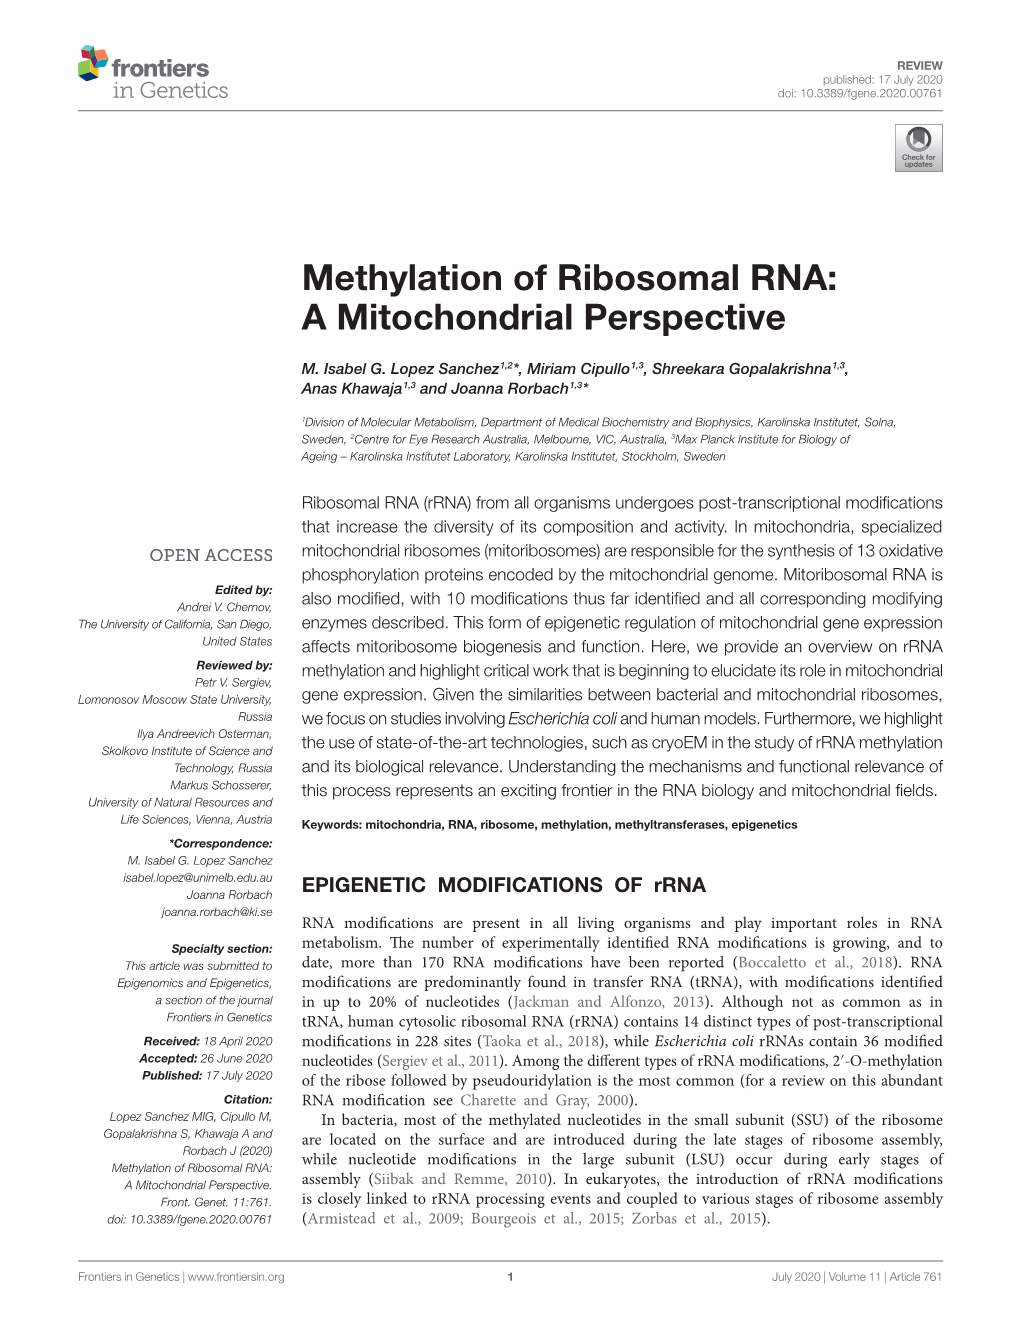 Methylation of Ribosomal RNA: a Mitochondrial Perspective